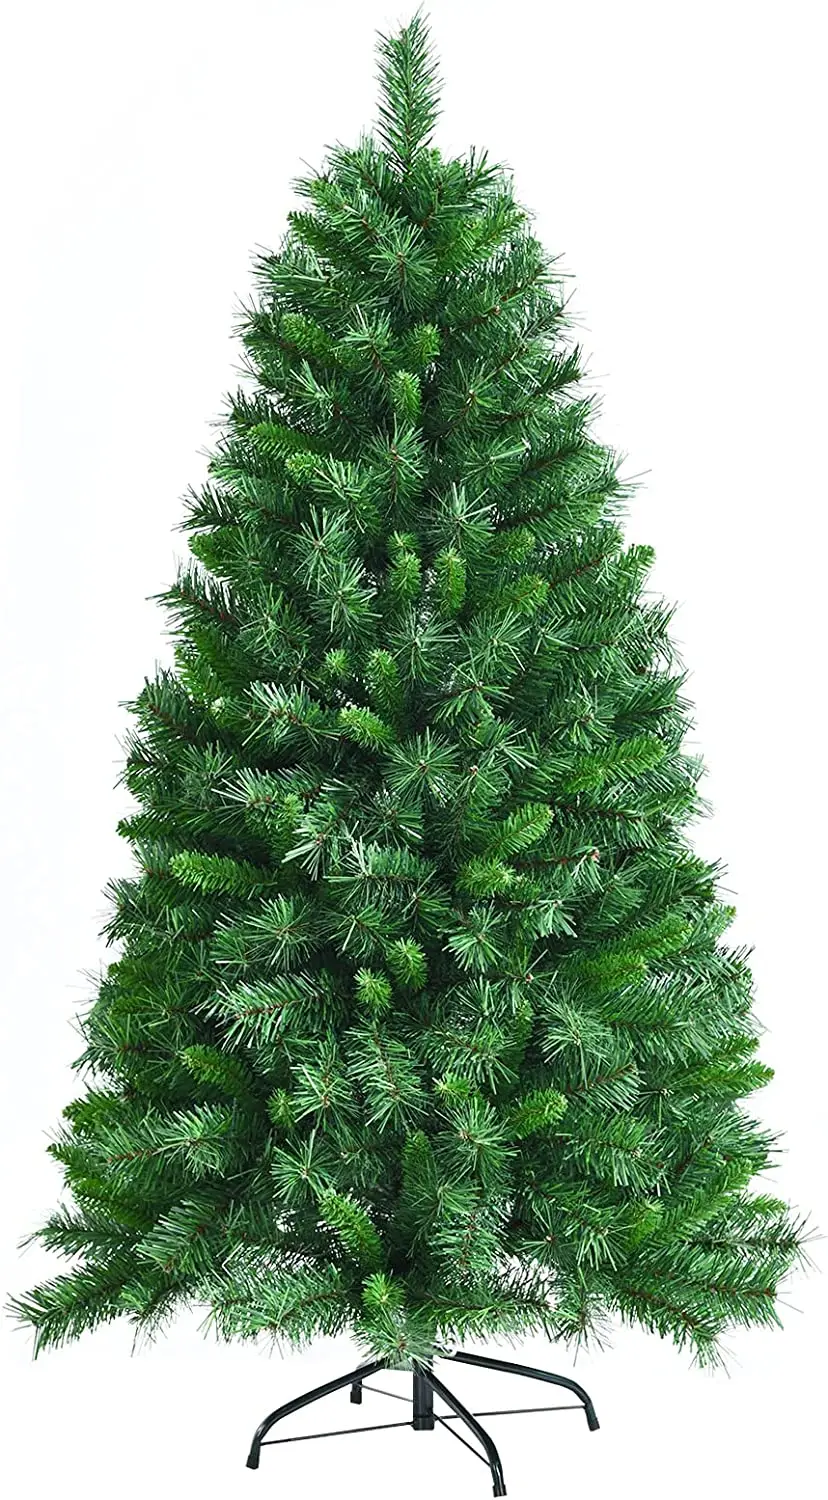 Weihnachtsbaum 150cm K眉nstlicher